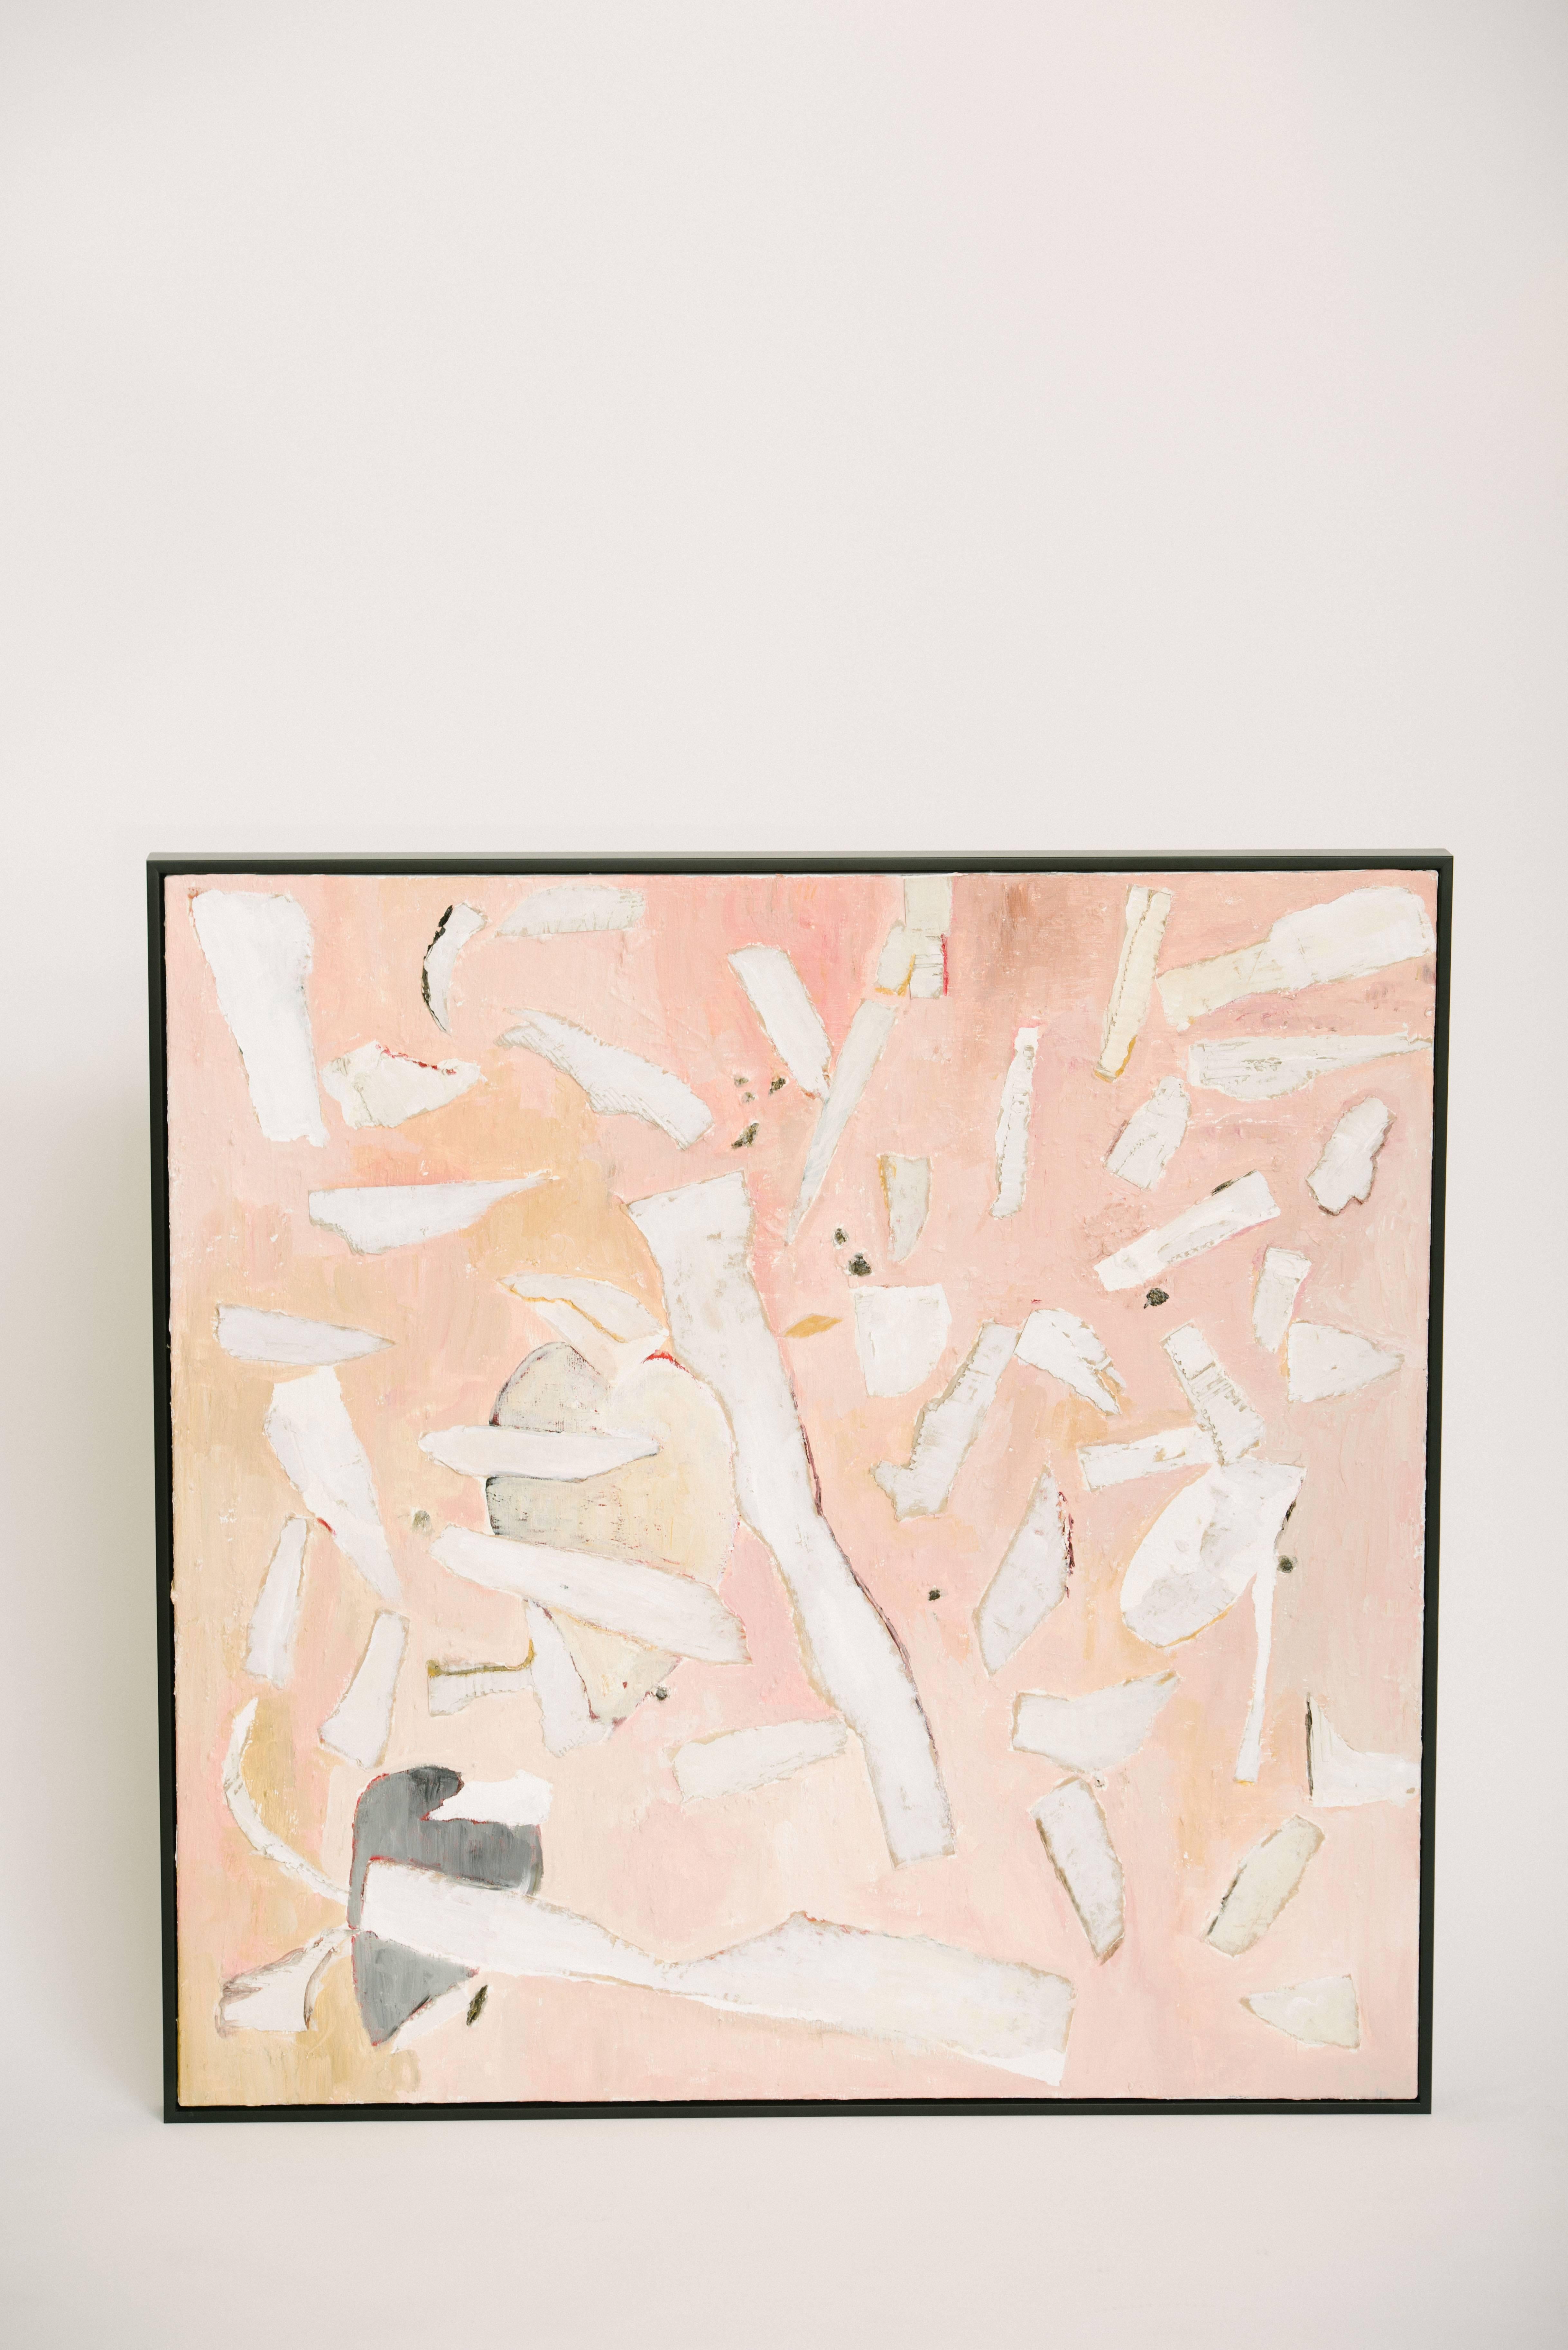 Moderne abstrakte Mixed-Media-Gemälde von Deborah Gottlieb in Rosa, Weiß und Grau mit schwarzem Rahmen. Einzeln verkauft, zwei verfügbar.